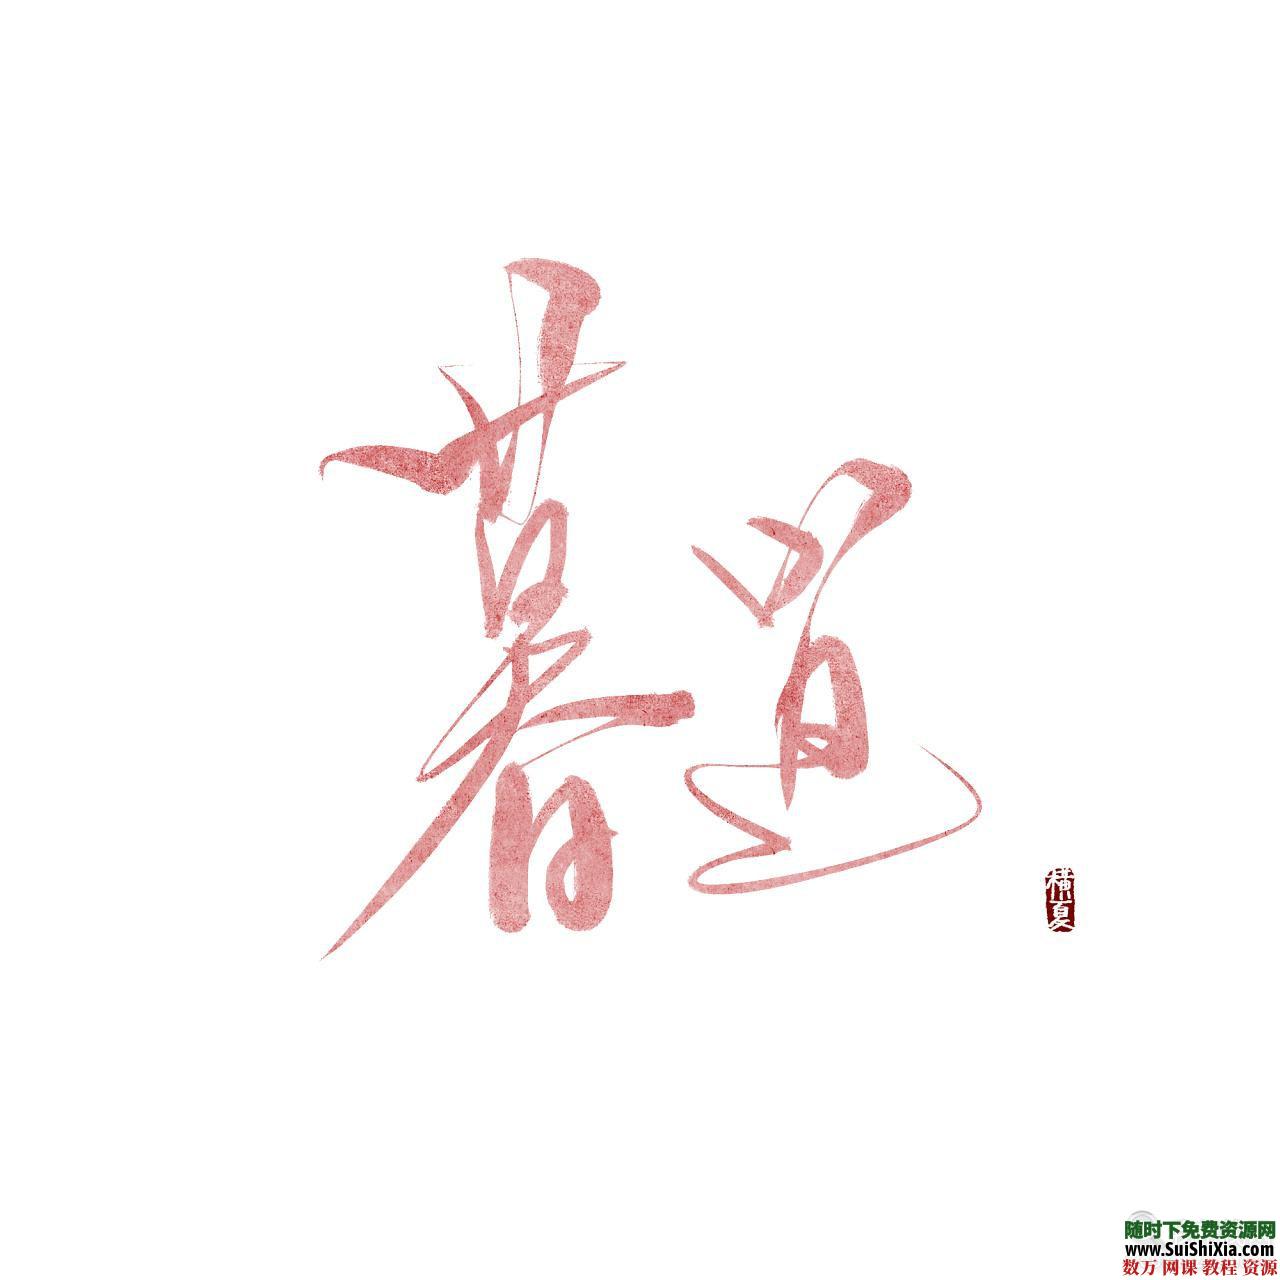 100款精挑细选超赞的中国古风字体Font素材打包 第2张